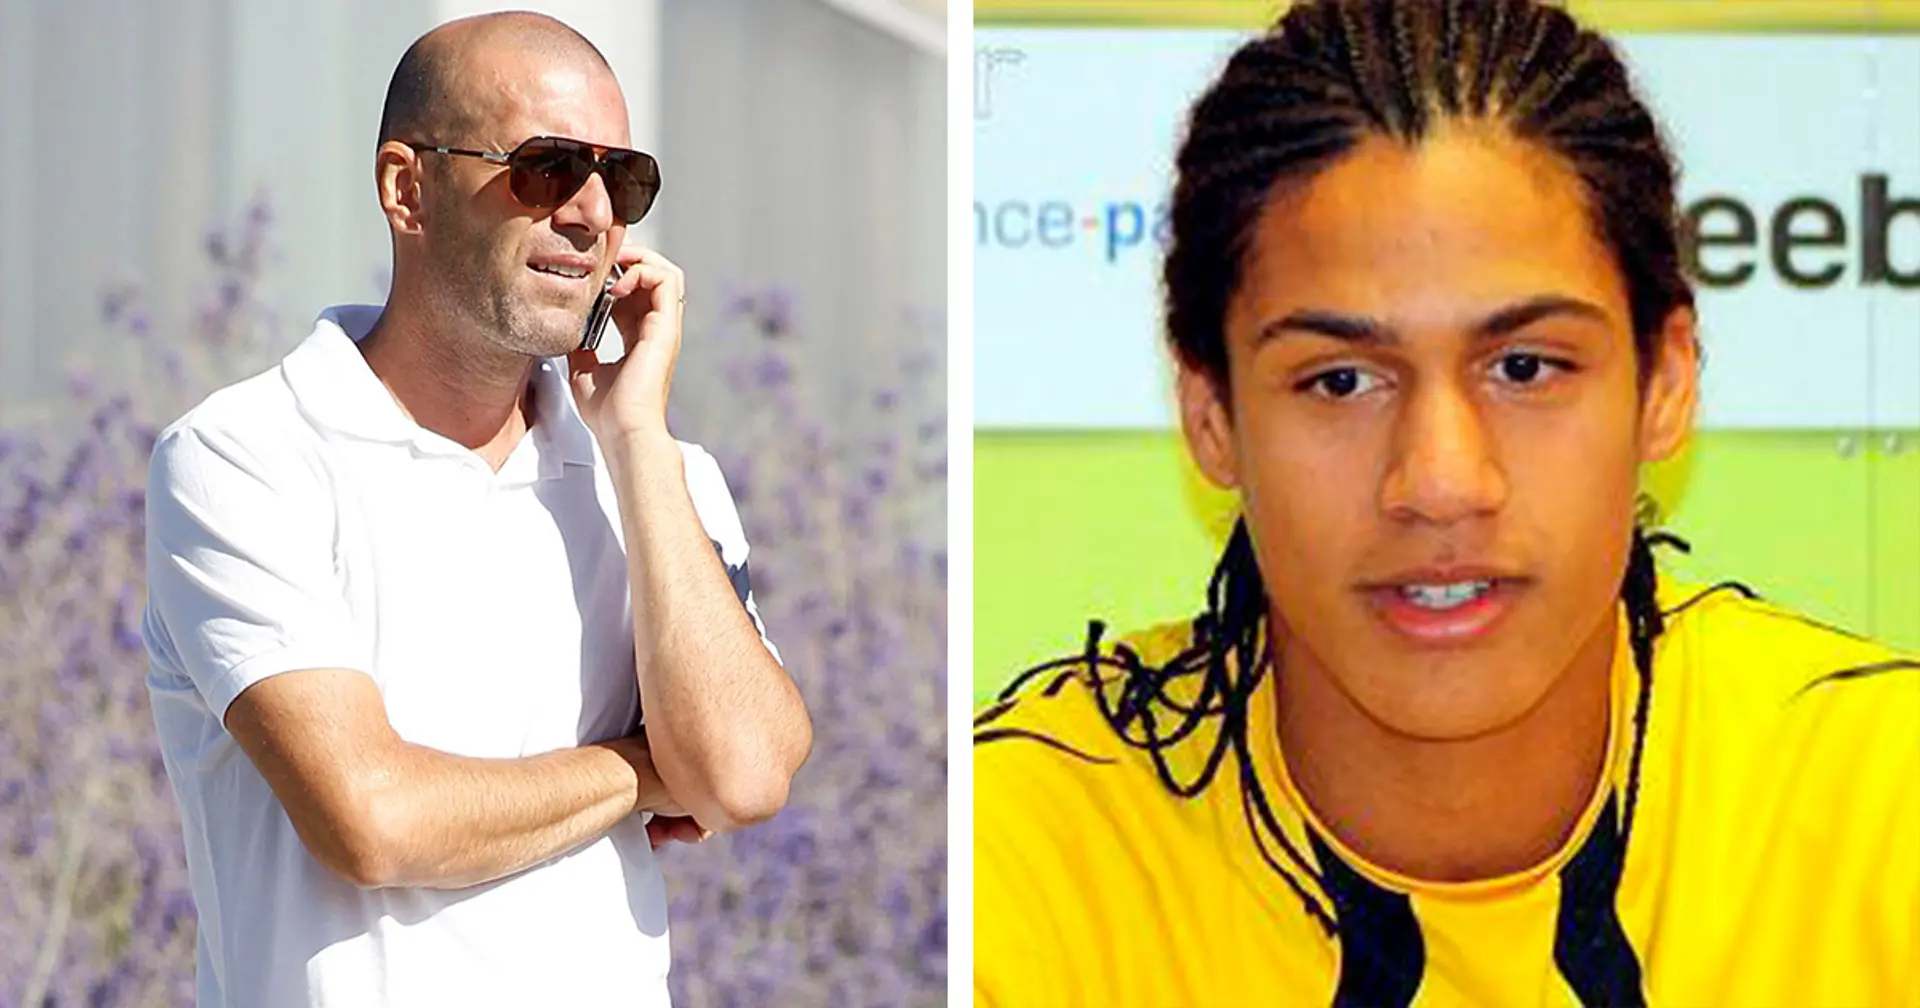 "Ich bin im Moment ein bisschen beschäftigt. Können Sie mich später anrufen?": Komische Geschichte über den 18-jährigen Varane, der Zidanes Anruf hastig beendete  